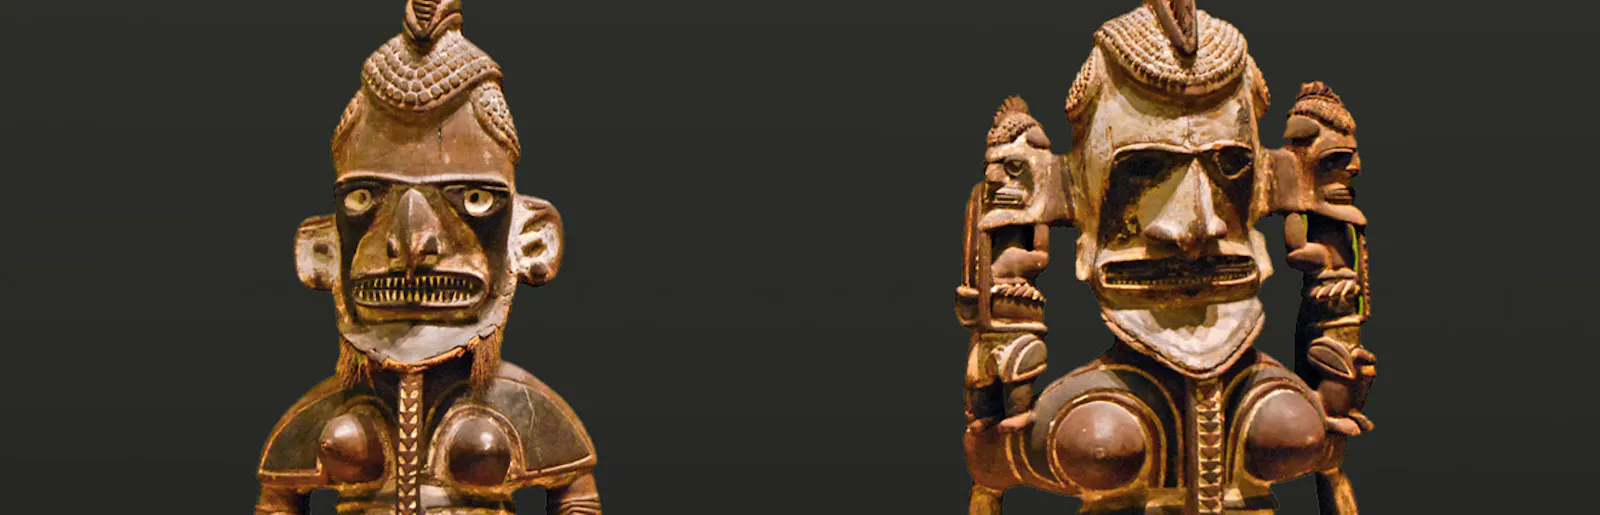 Zwei Uli-Figuren aus Neuirland im Ethnologischen Museum in Berlin, die hermaphrodite Züge zeigen.